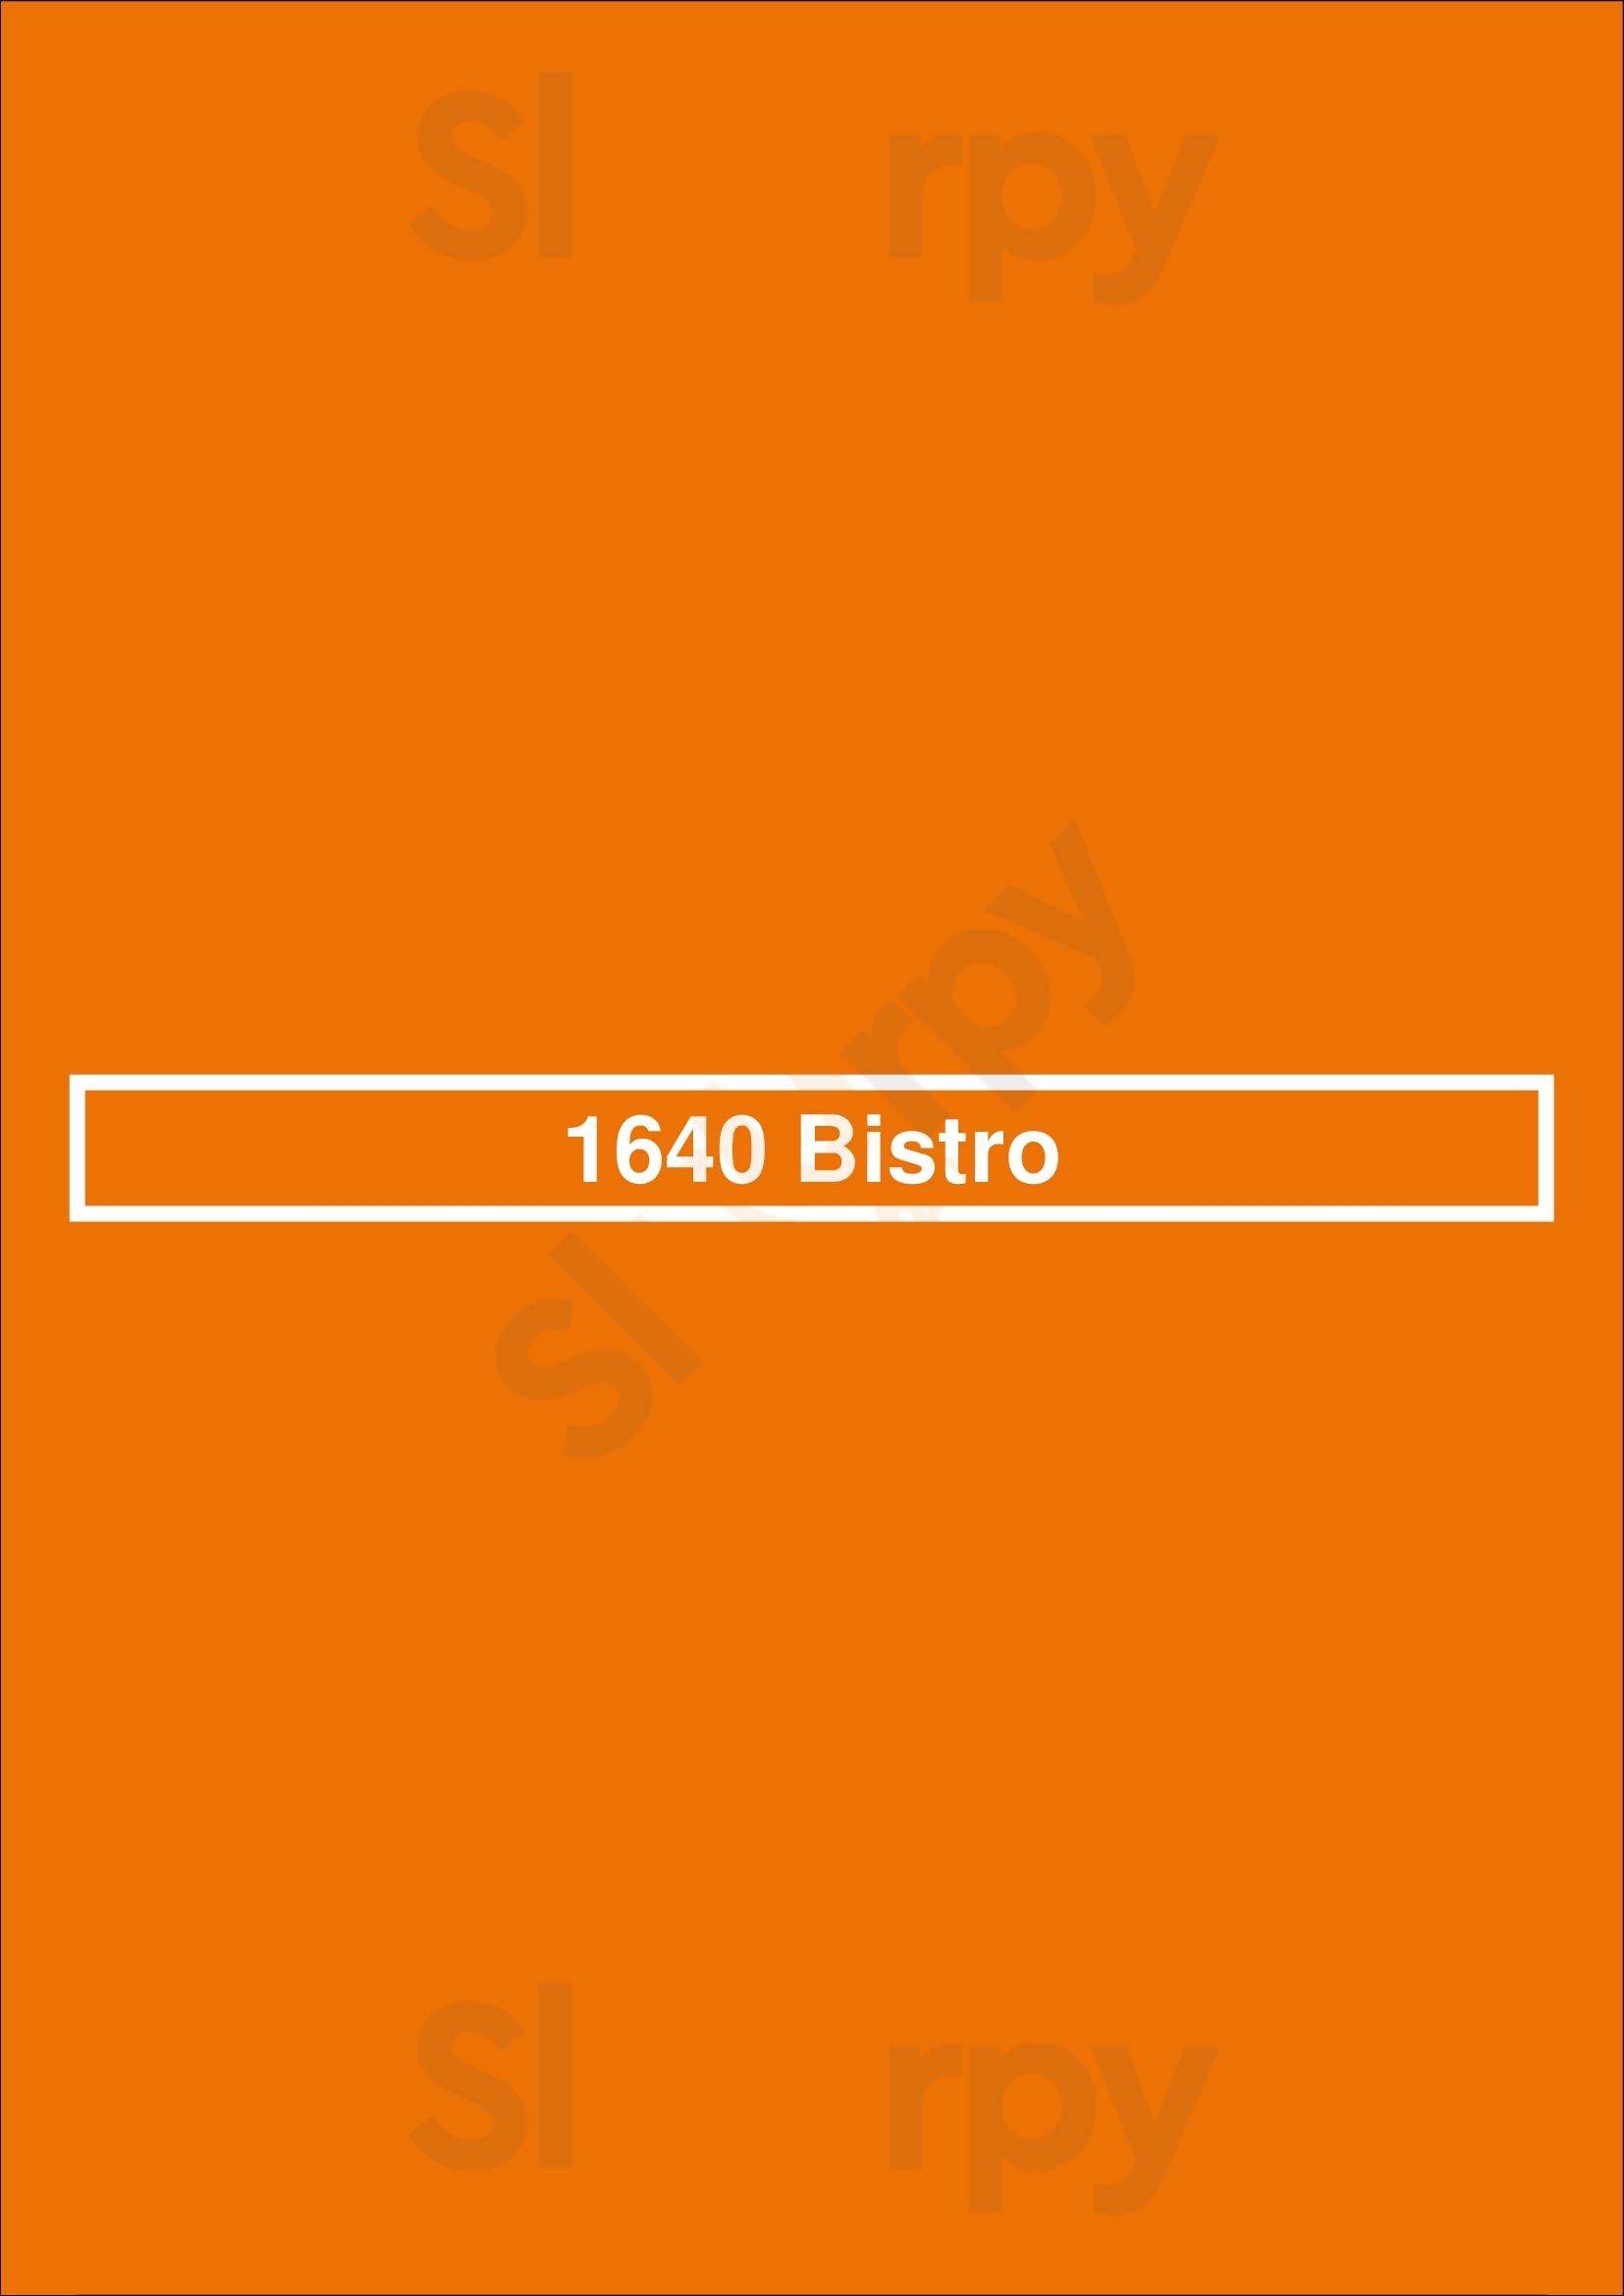 1640 Bistro Quebec City Menu - 1